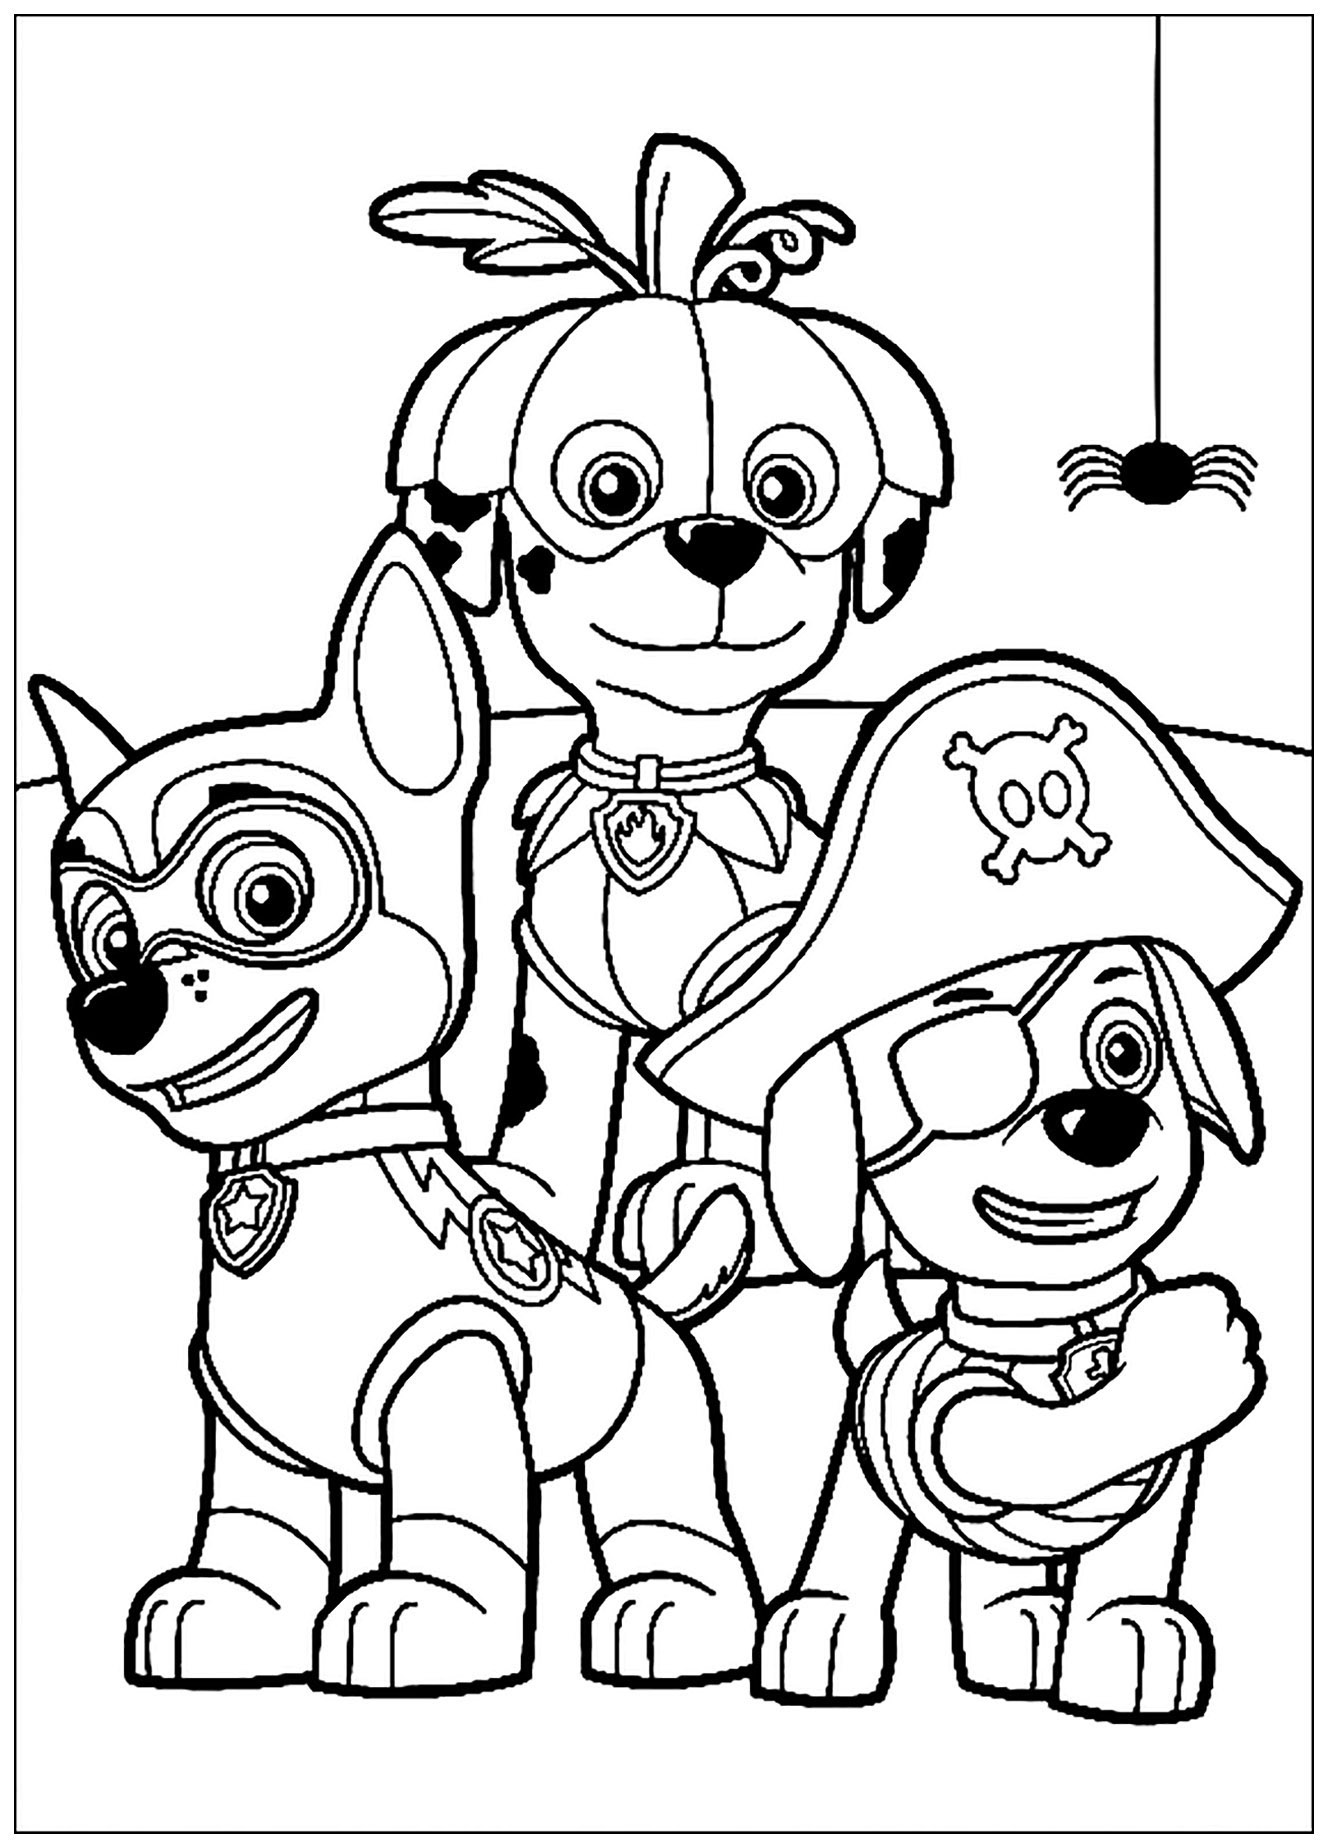 Image de Pat Patrouille à imprimer et à colorier : Trois des chiens de la patrouille